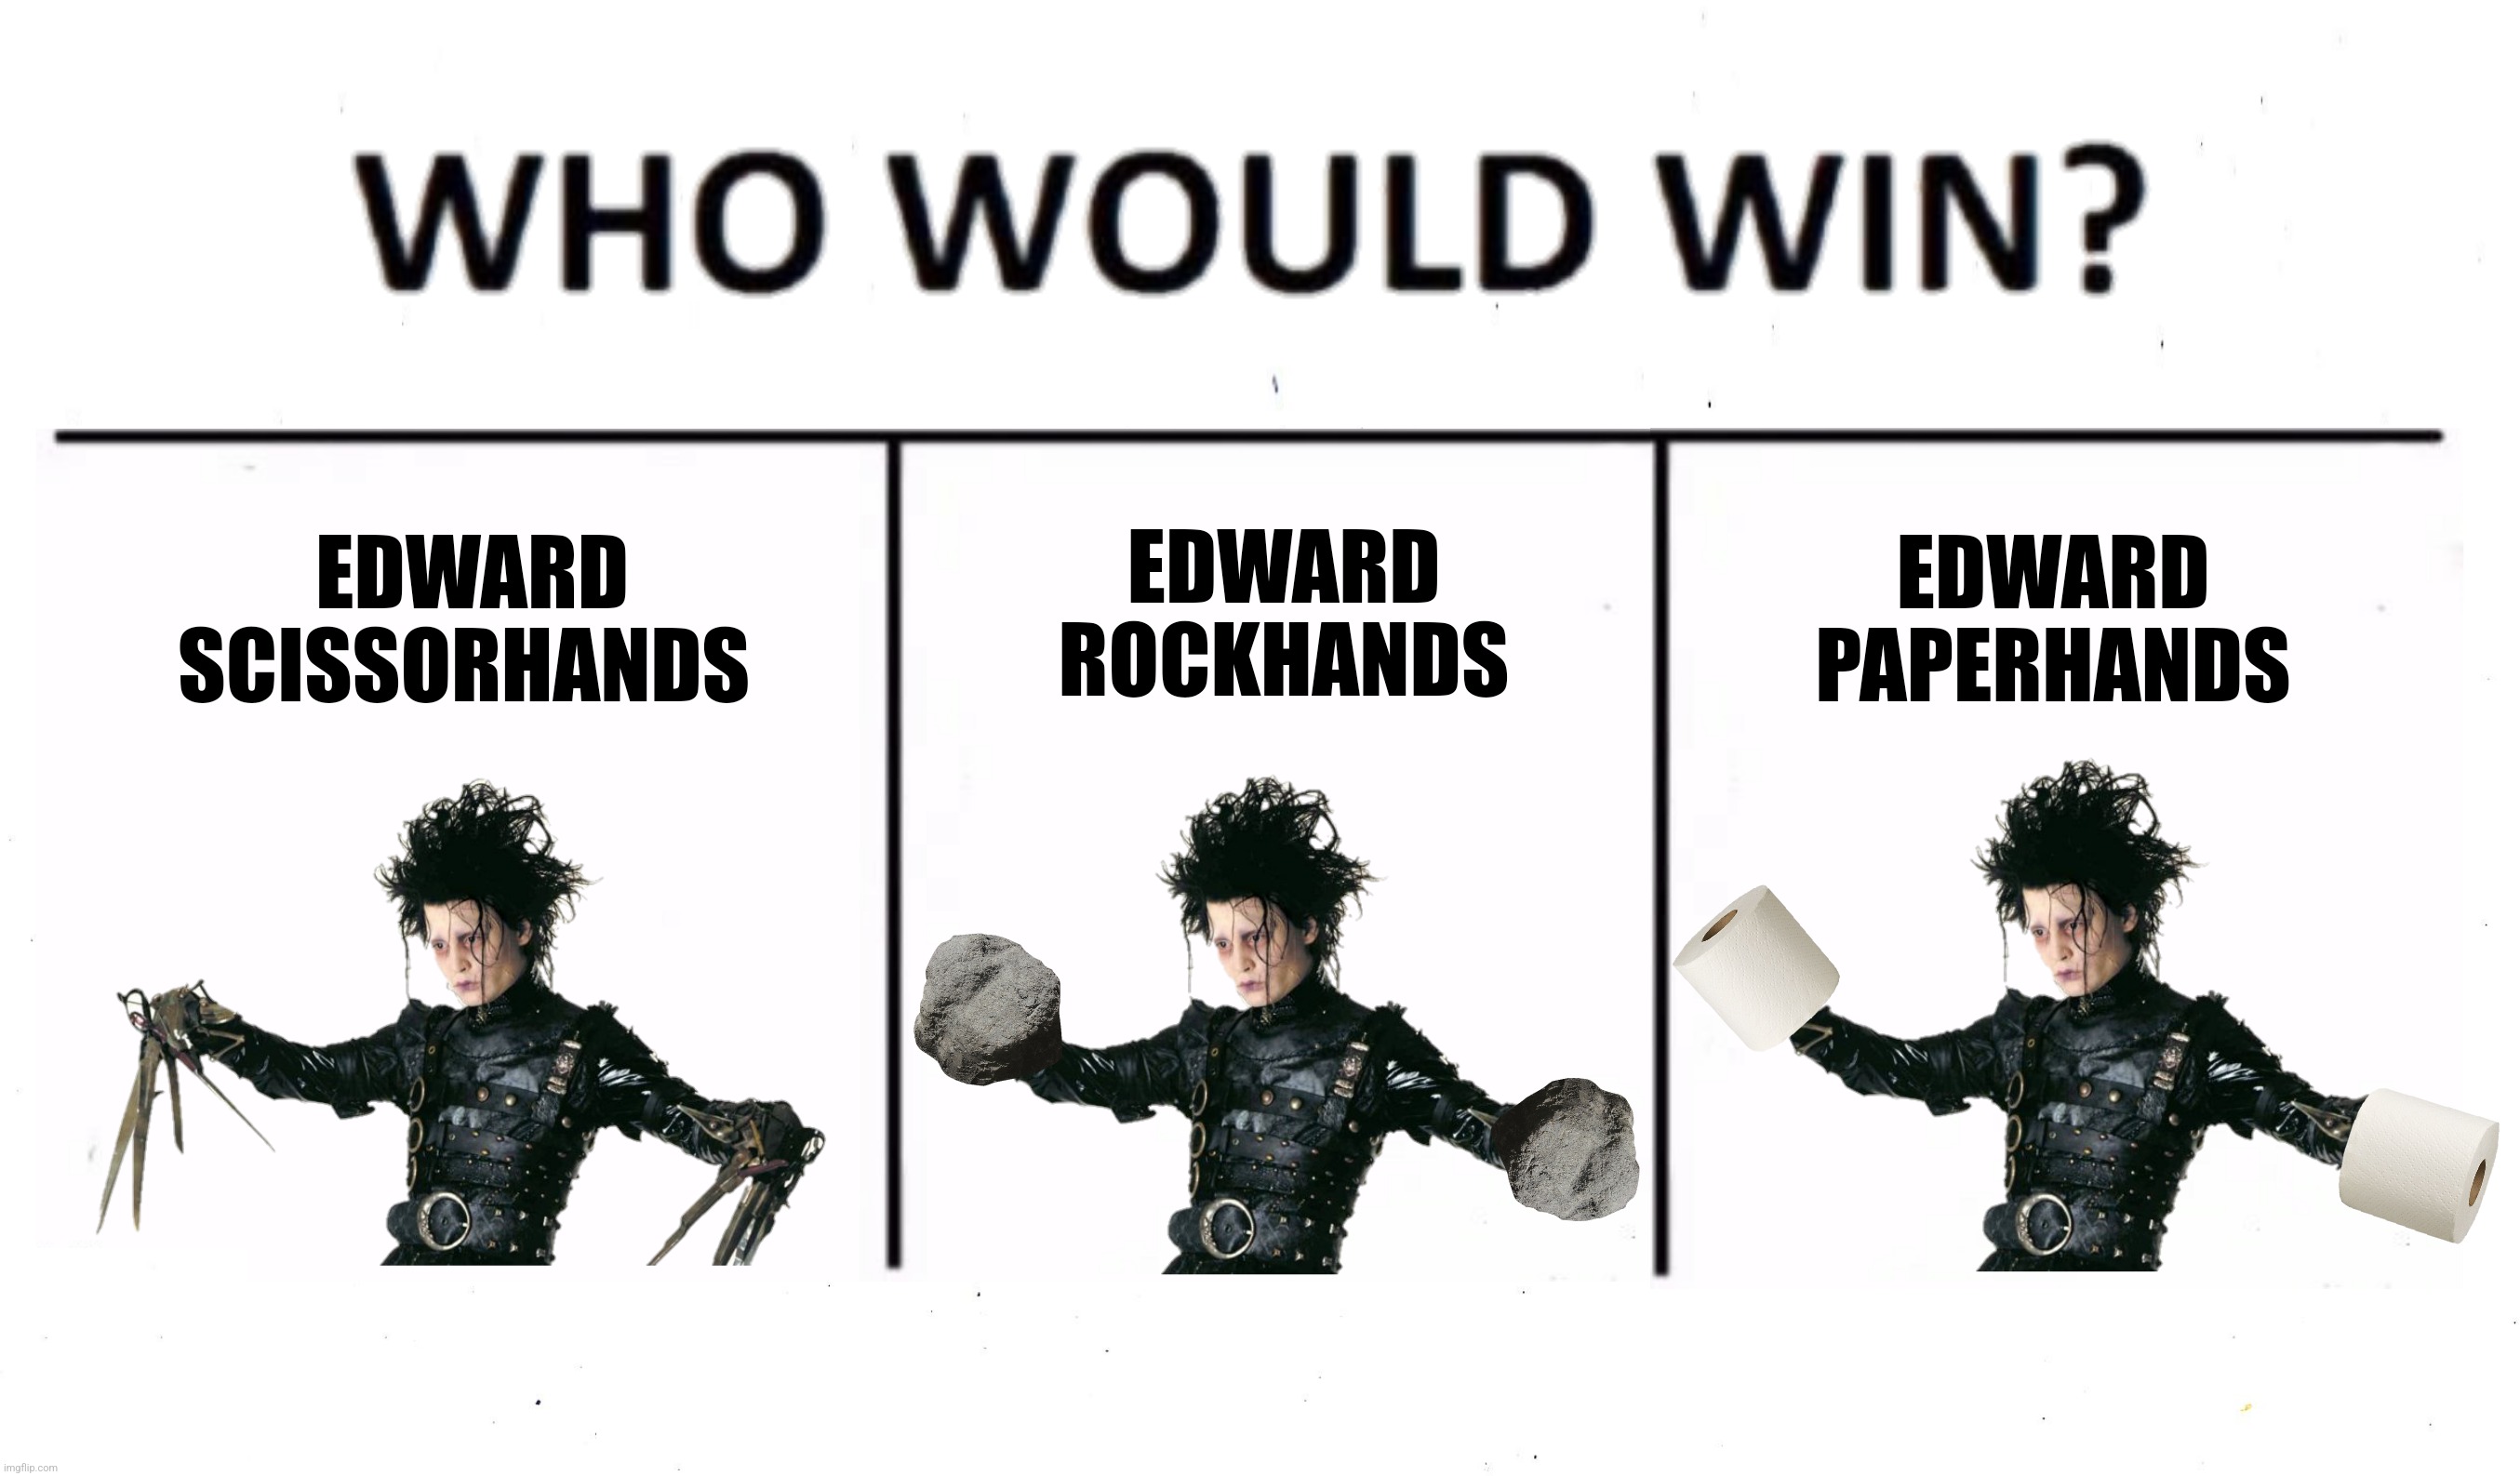 EDWARD SCISSORHANDS EDWARD ROCKHANDS EDWARD PAPERHANDS | made w/ Imgflip meme maker